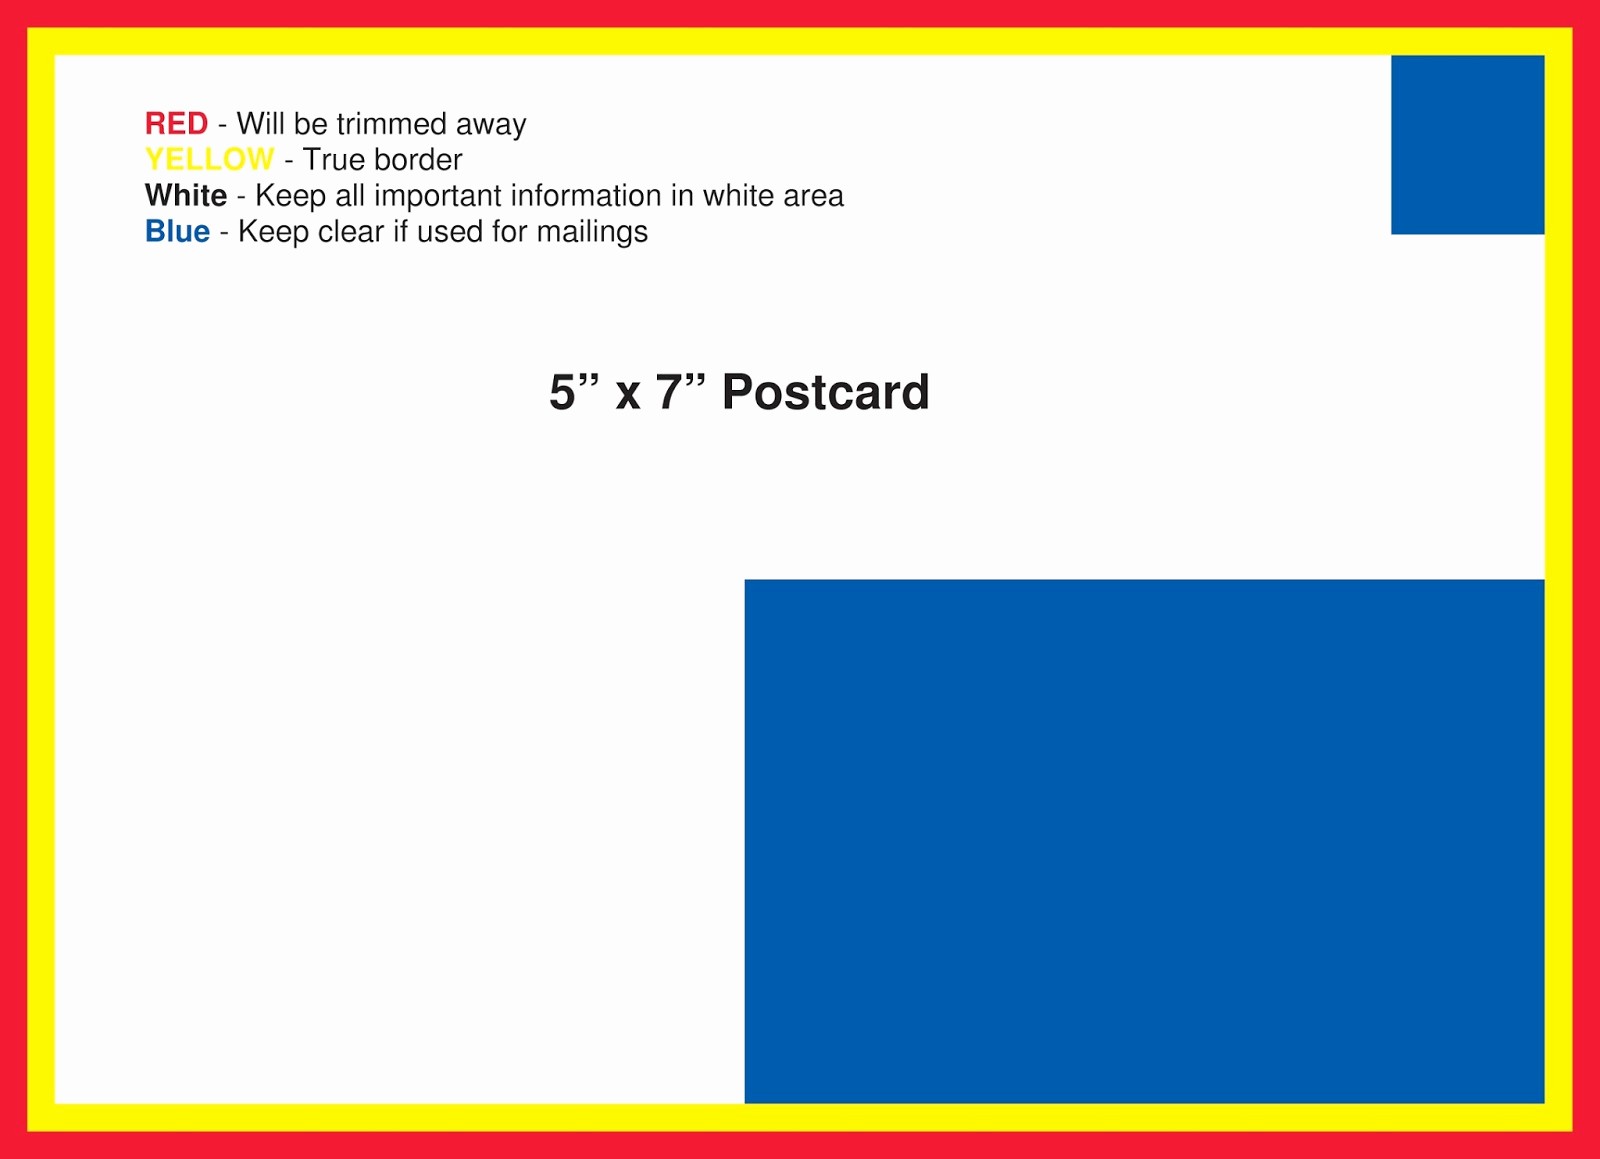 5x7 Greeting Card Template Word Beautiful 5x7 Postcard Template for Word Free Postcard Templates